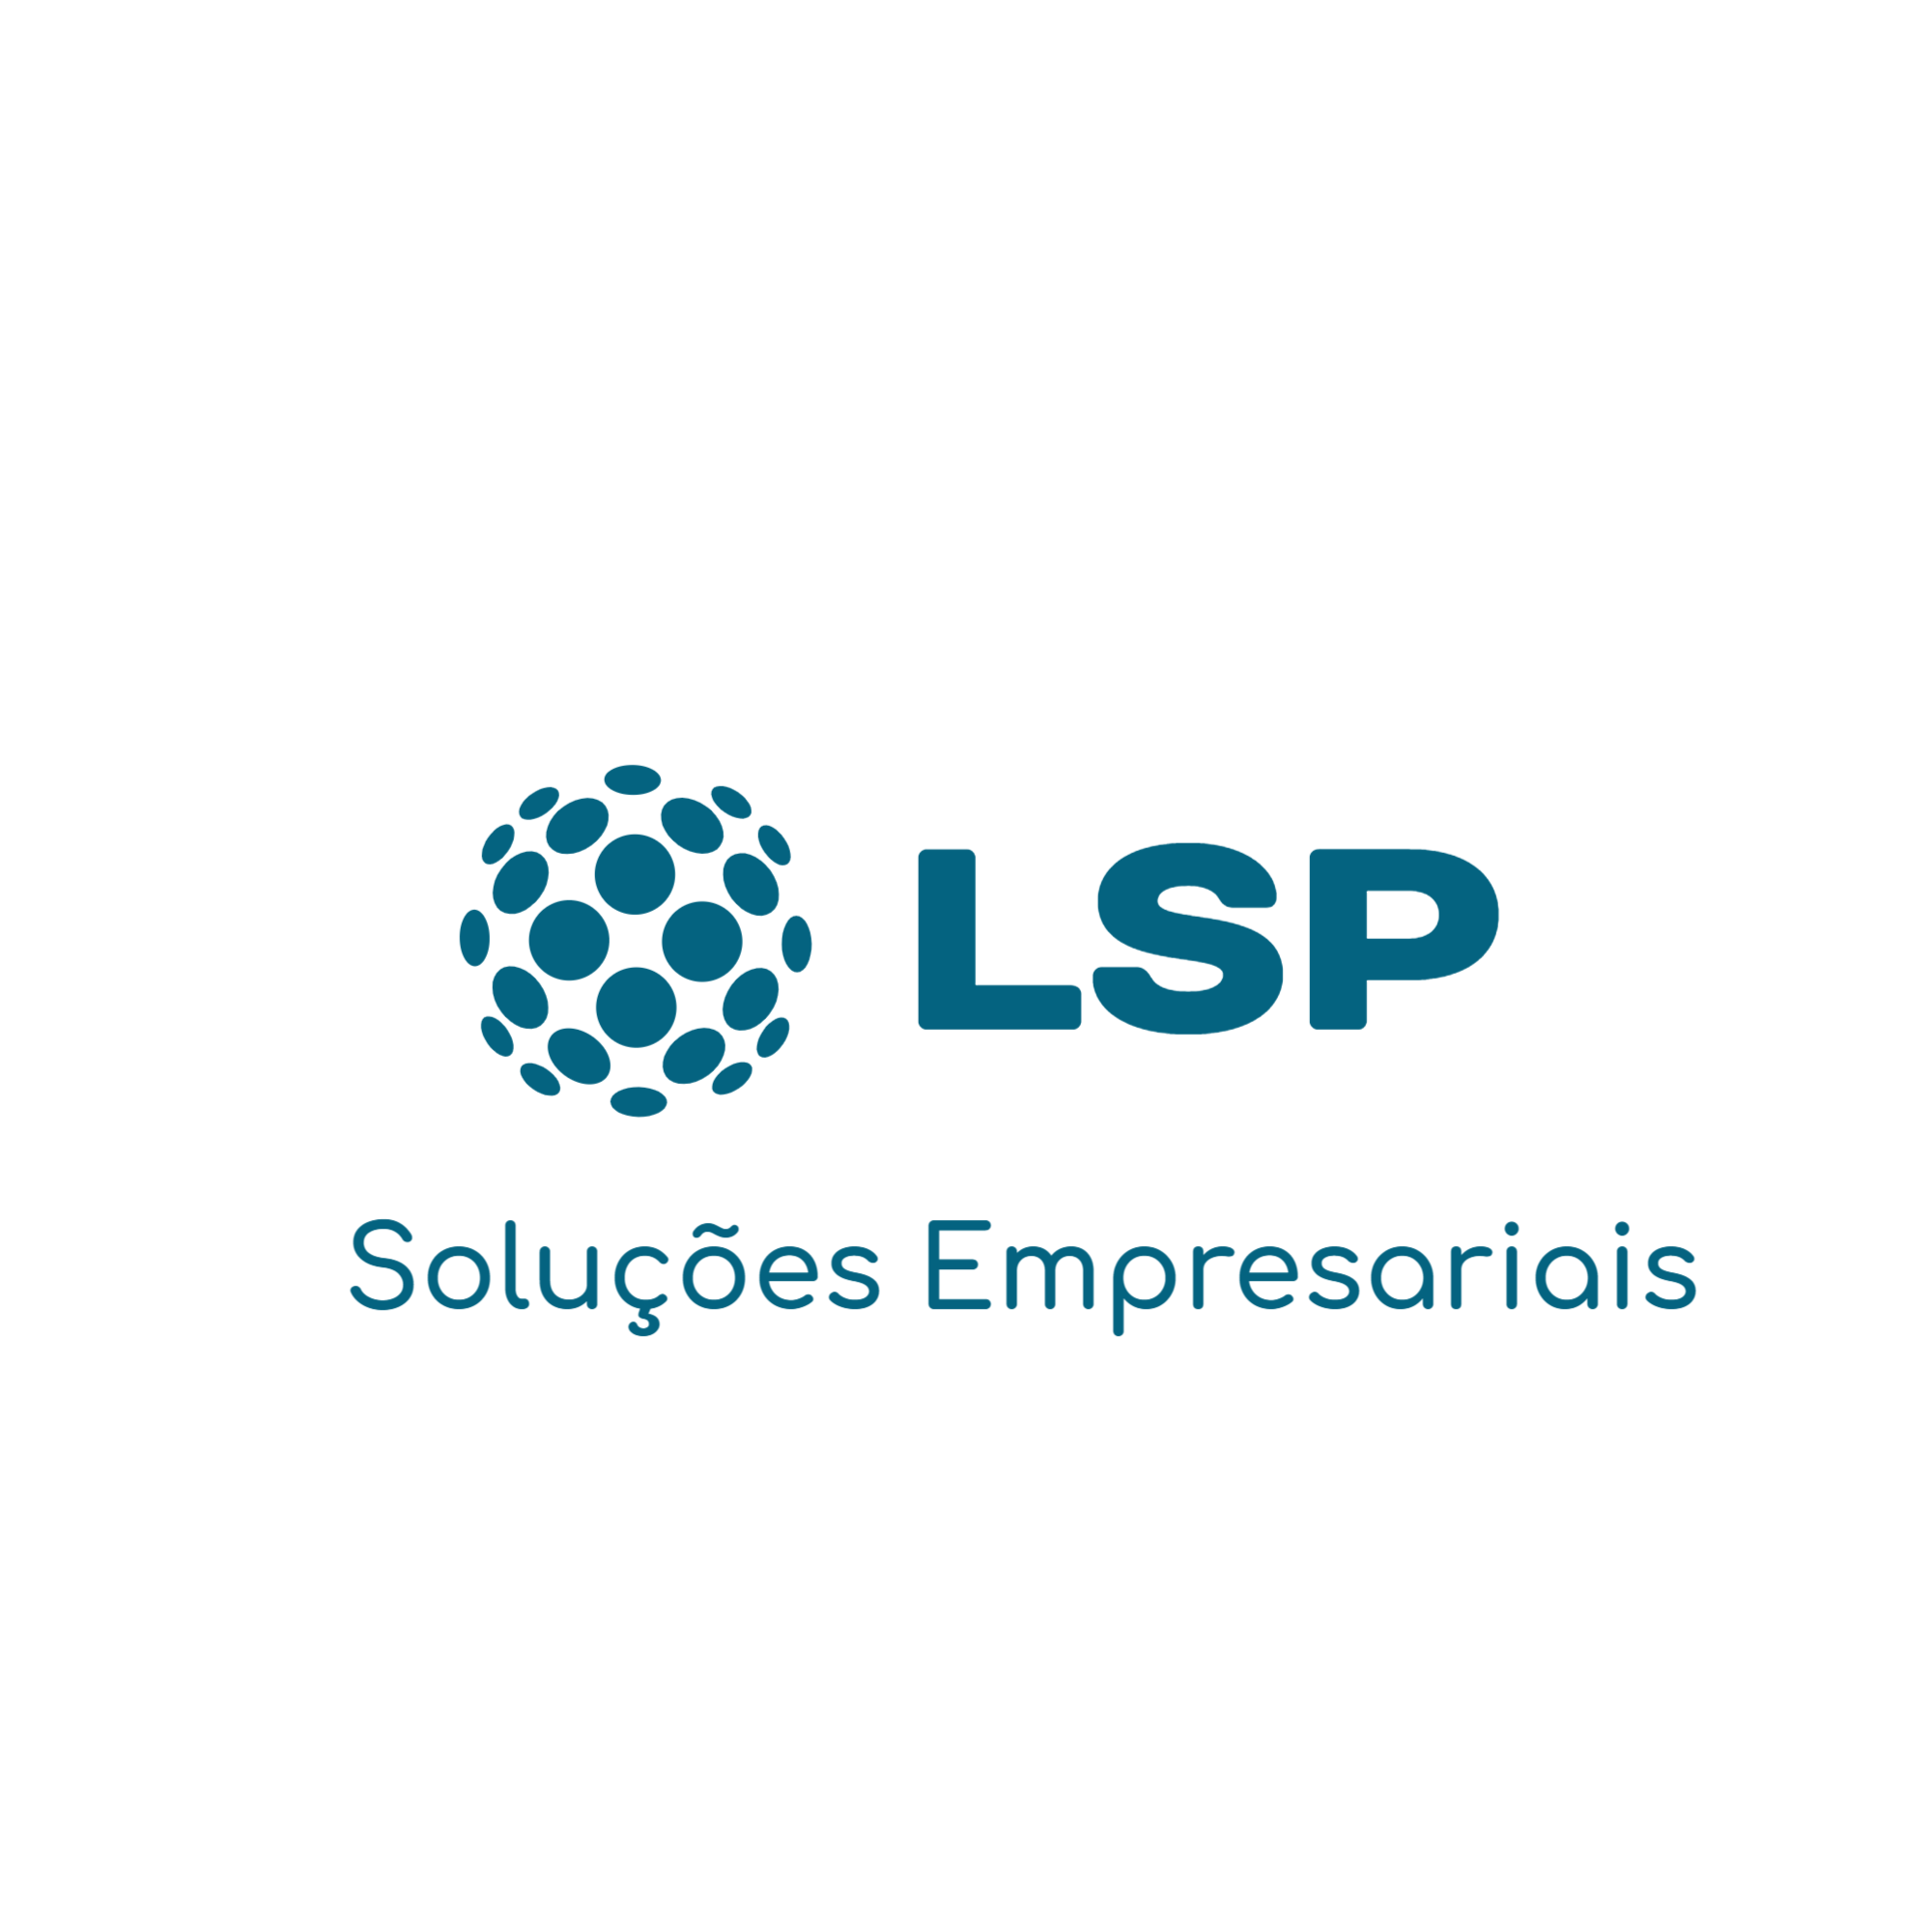 LSP Soluções Empresariais | Democratizando